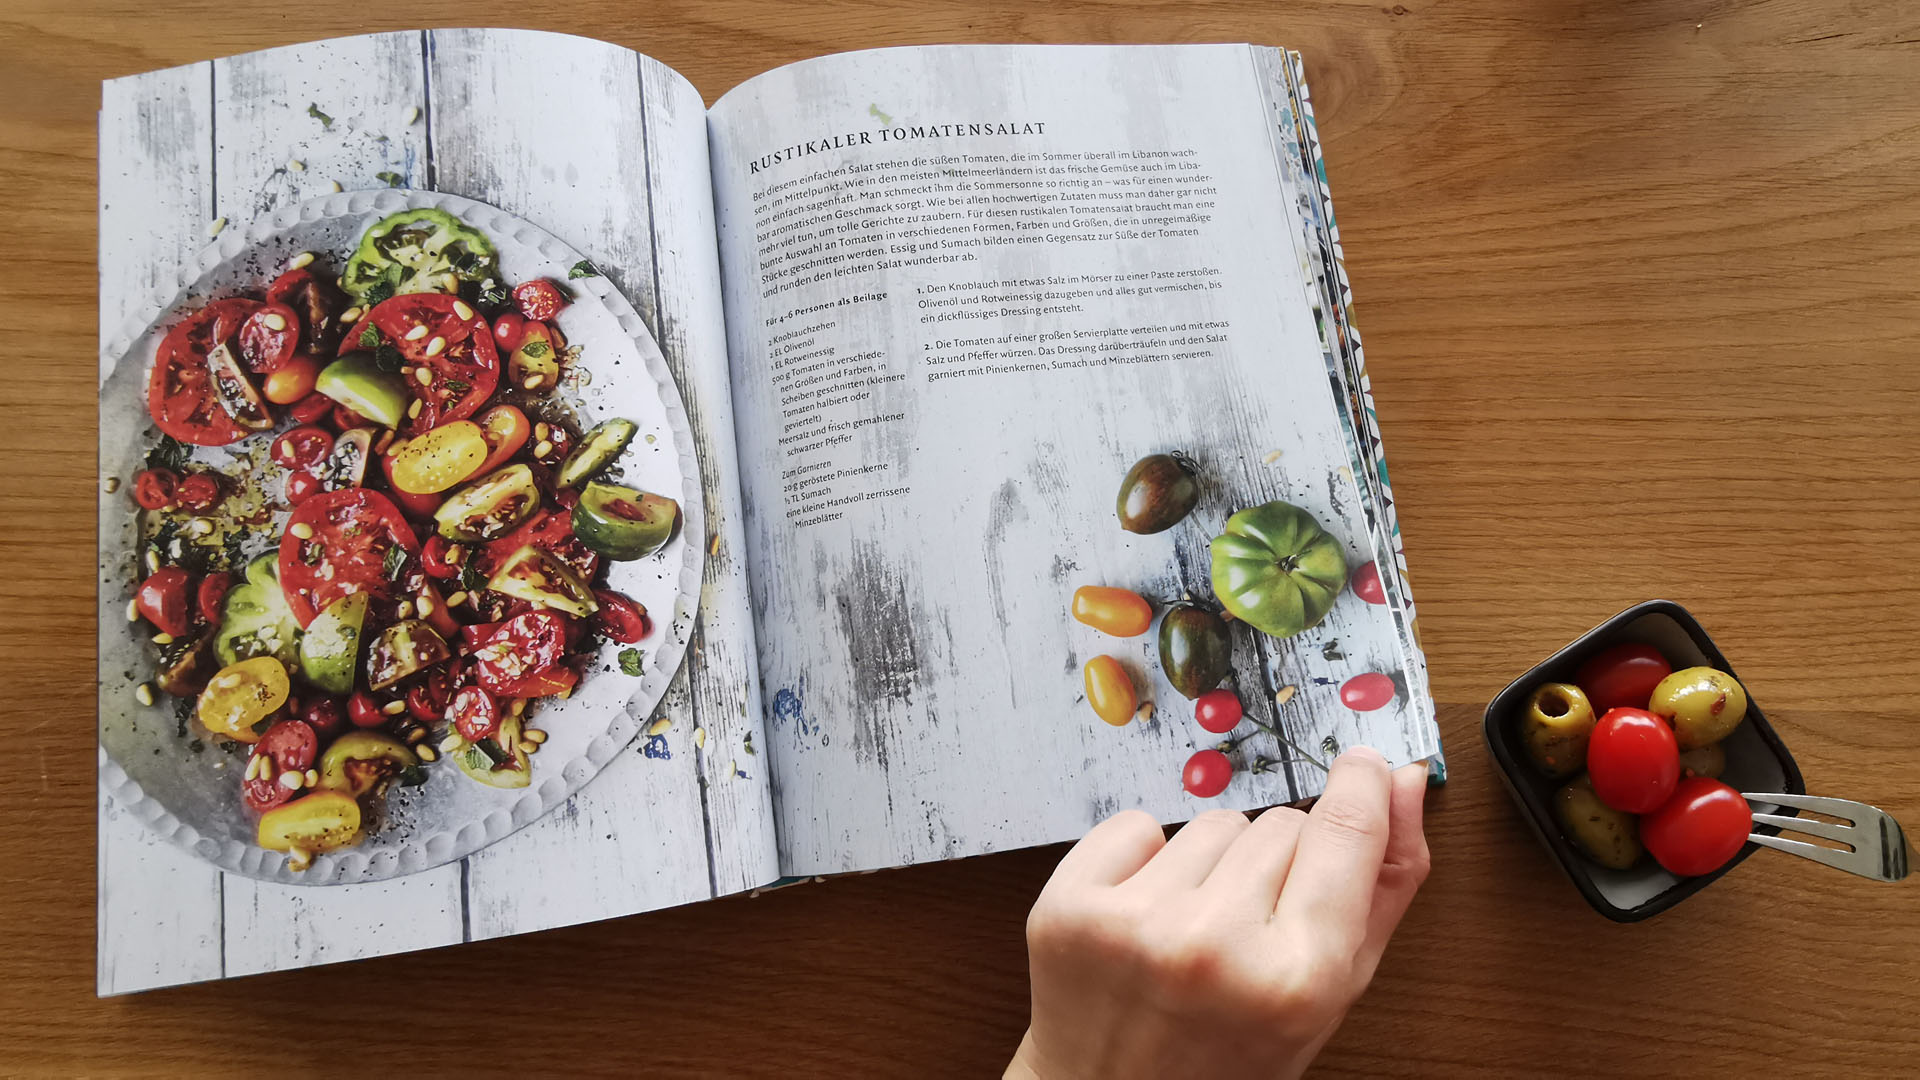 Rezepte für knackige Salate mit aromatischen Kräutern hat der Autor im Buch notiert